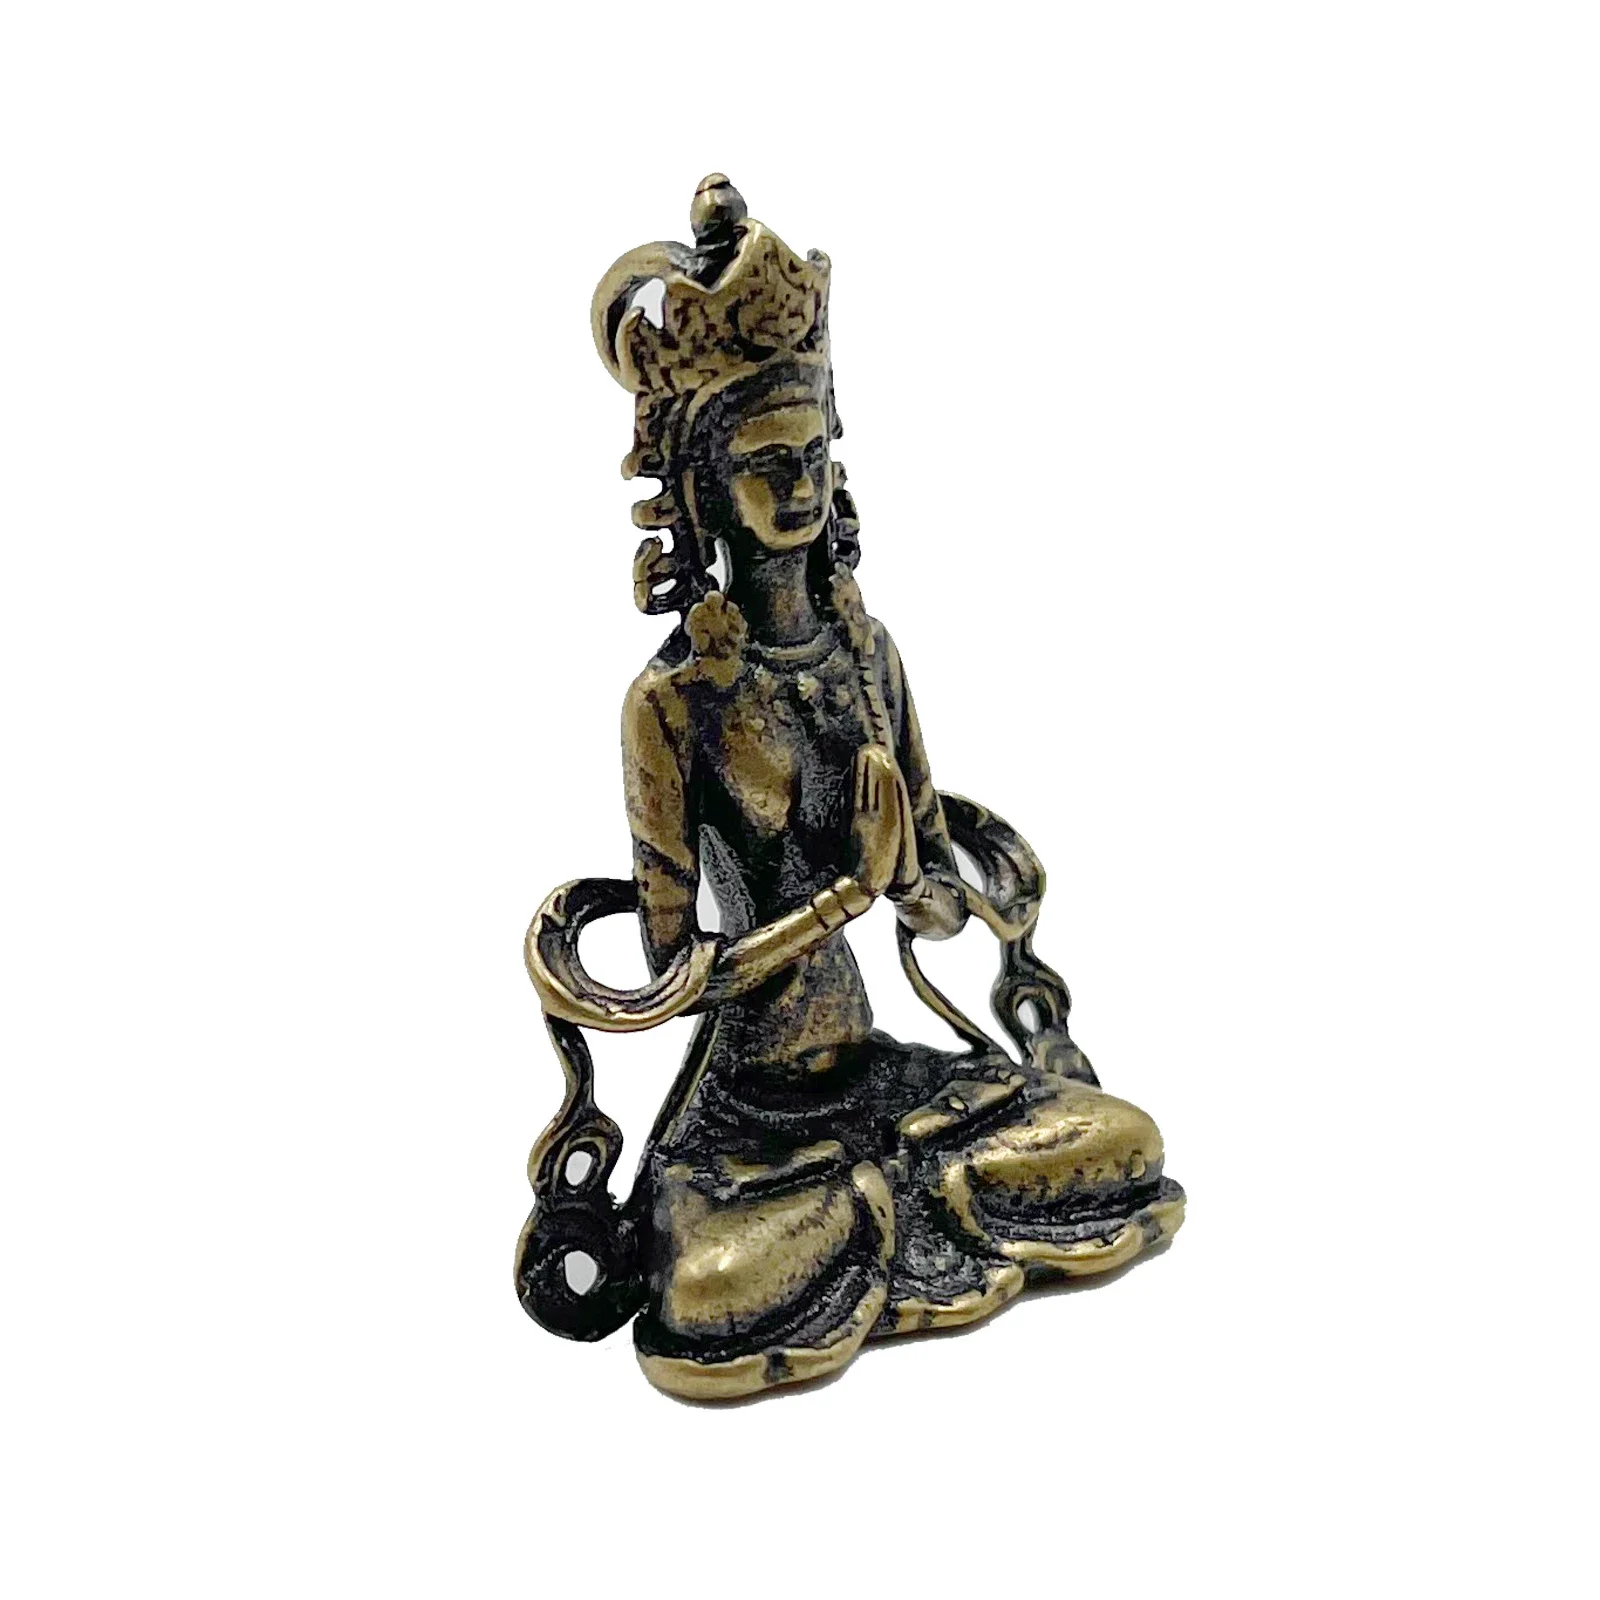 1pc Retro Messing Meditieren Zen Buddhismus Haushalt Buddha ornament Wohnzimmer Handgemachte Dekoration Kupfer Statue Tee Haus Ornament